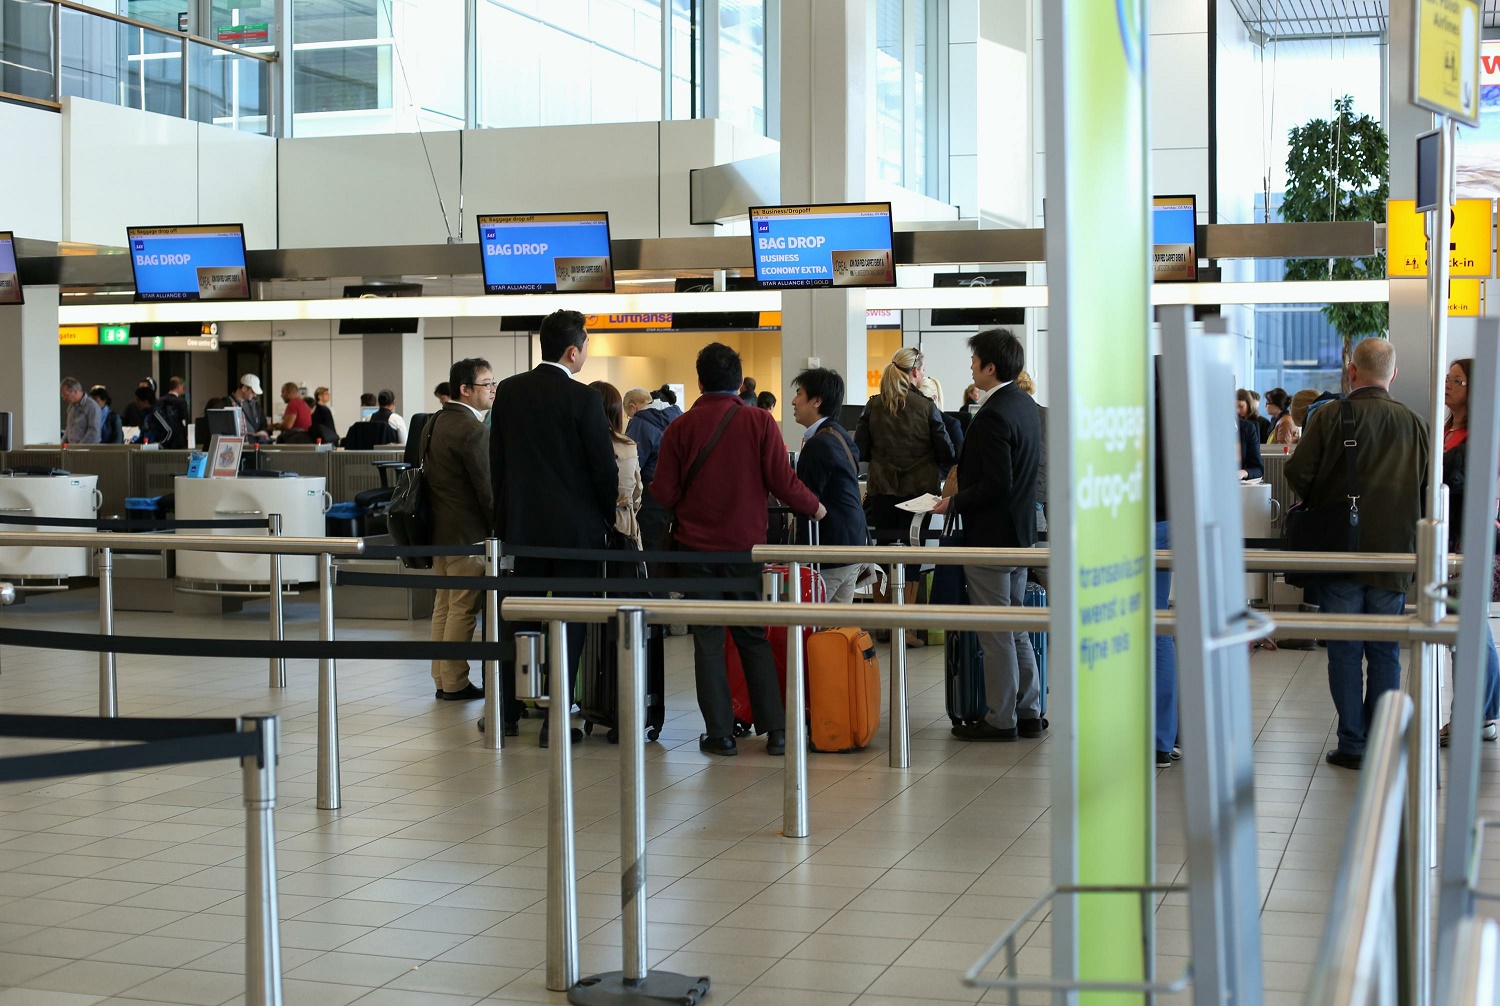 Аэропорт покупка билетов. Паспортный контроль. Паспортный контроль на границе. Аэропорт Тбилиси паспортный контроль. Ассоциация аэропорт.